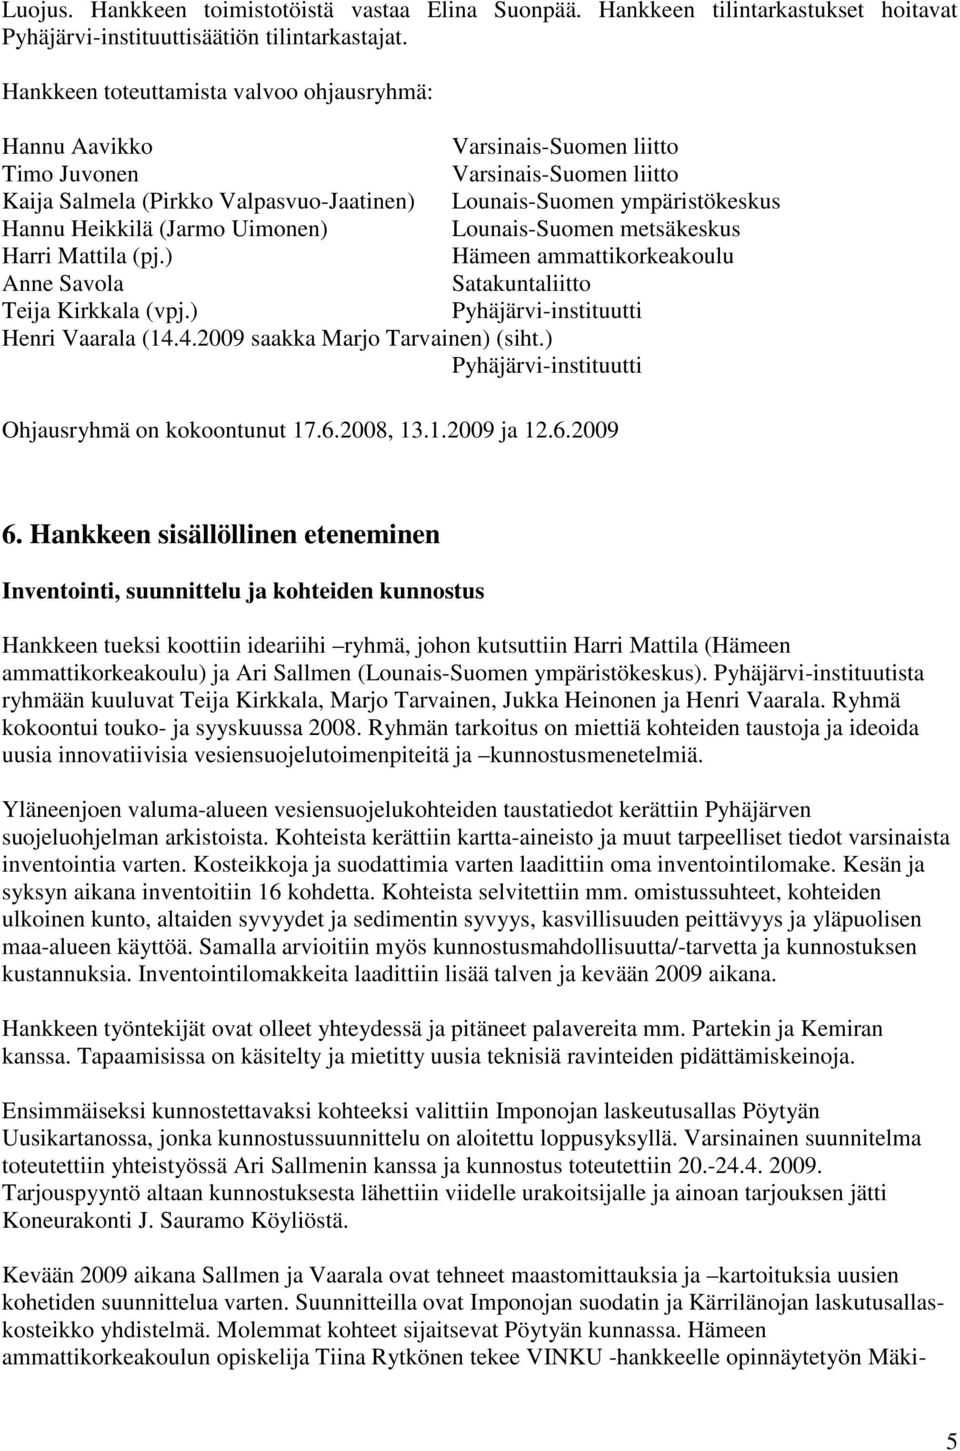 Heikkilä (Jarmo Uimonen) Lounais-Suomen metsäkeskus Harri Mattila (pj.) Hämeen ammattikorkeakoulu Anne Savola Satakuntaliitto Teija Kirkkala (vpj.) Pyhäjärvi-instituutti Henri Vaarala (14.